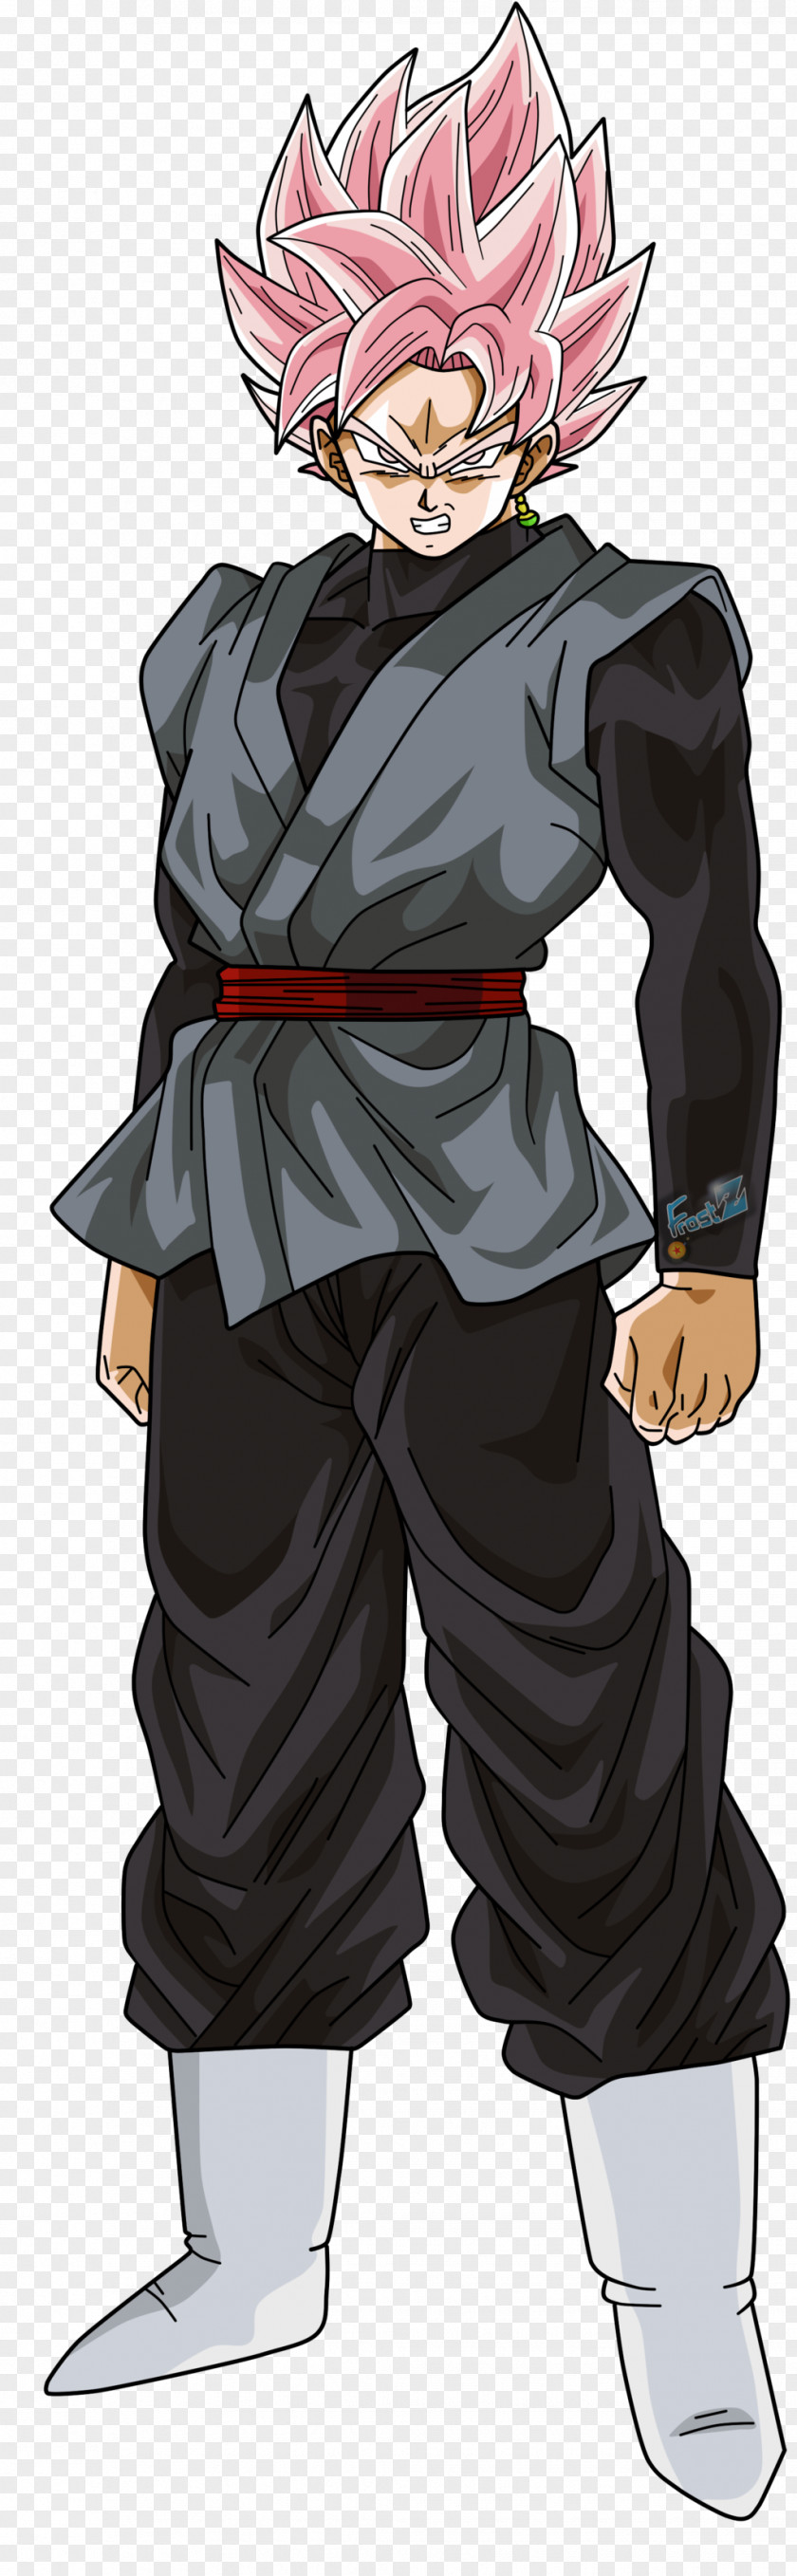 Goku Black Vegeta Trunks Super Saiya PNG